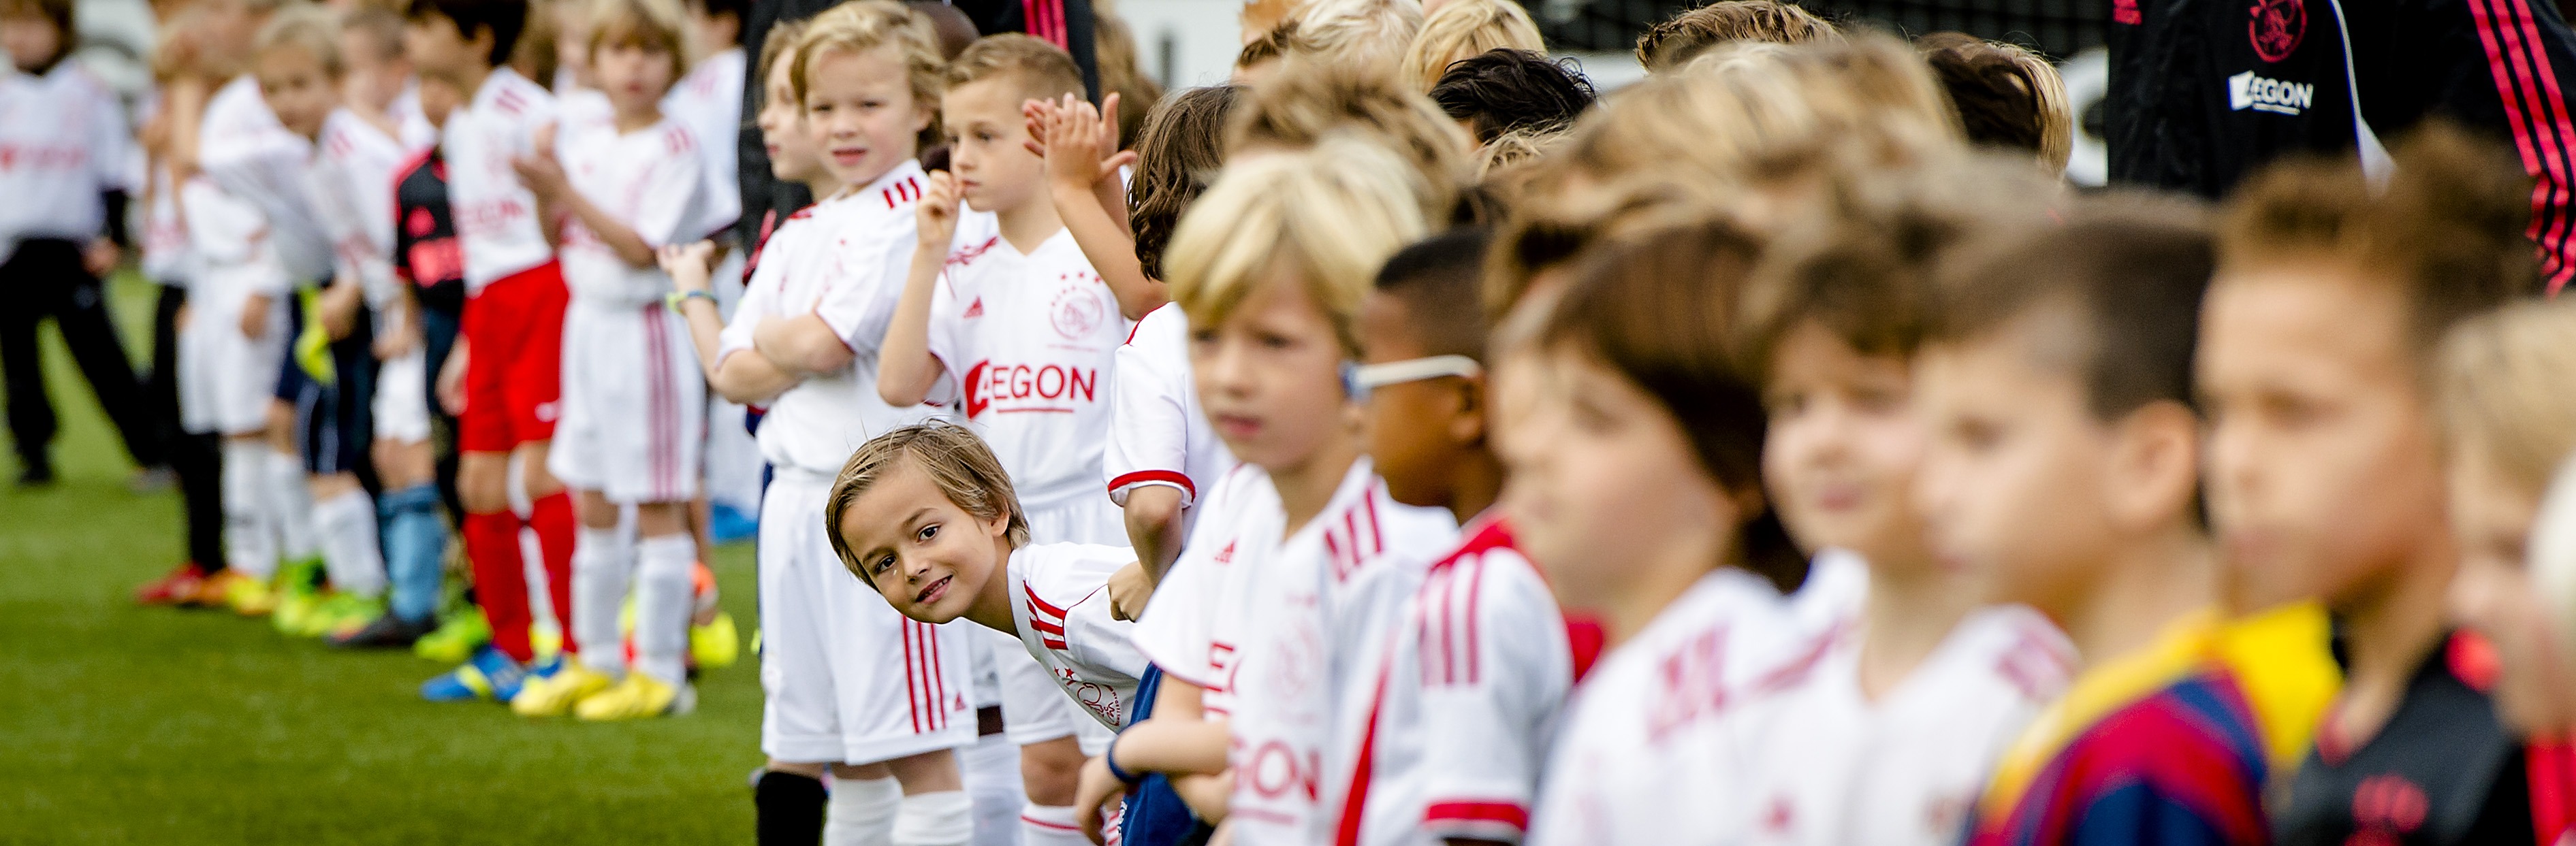 Ajax: Dutch club opens the Future' |